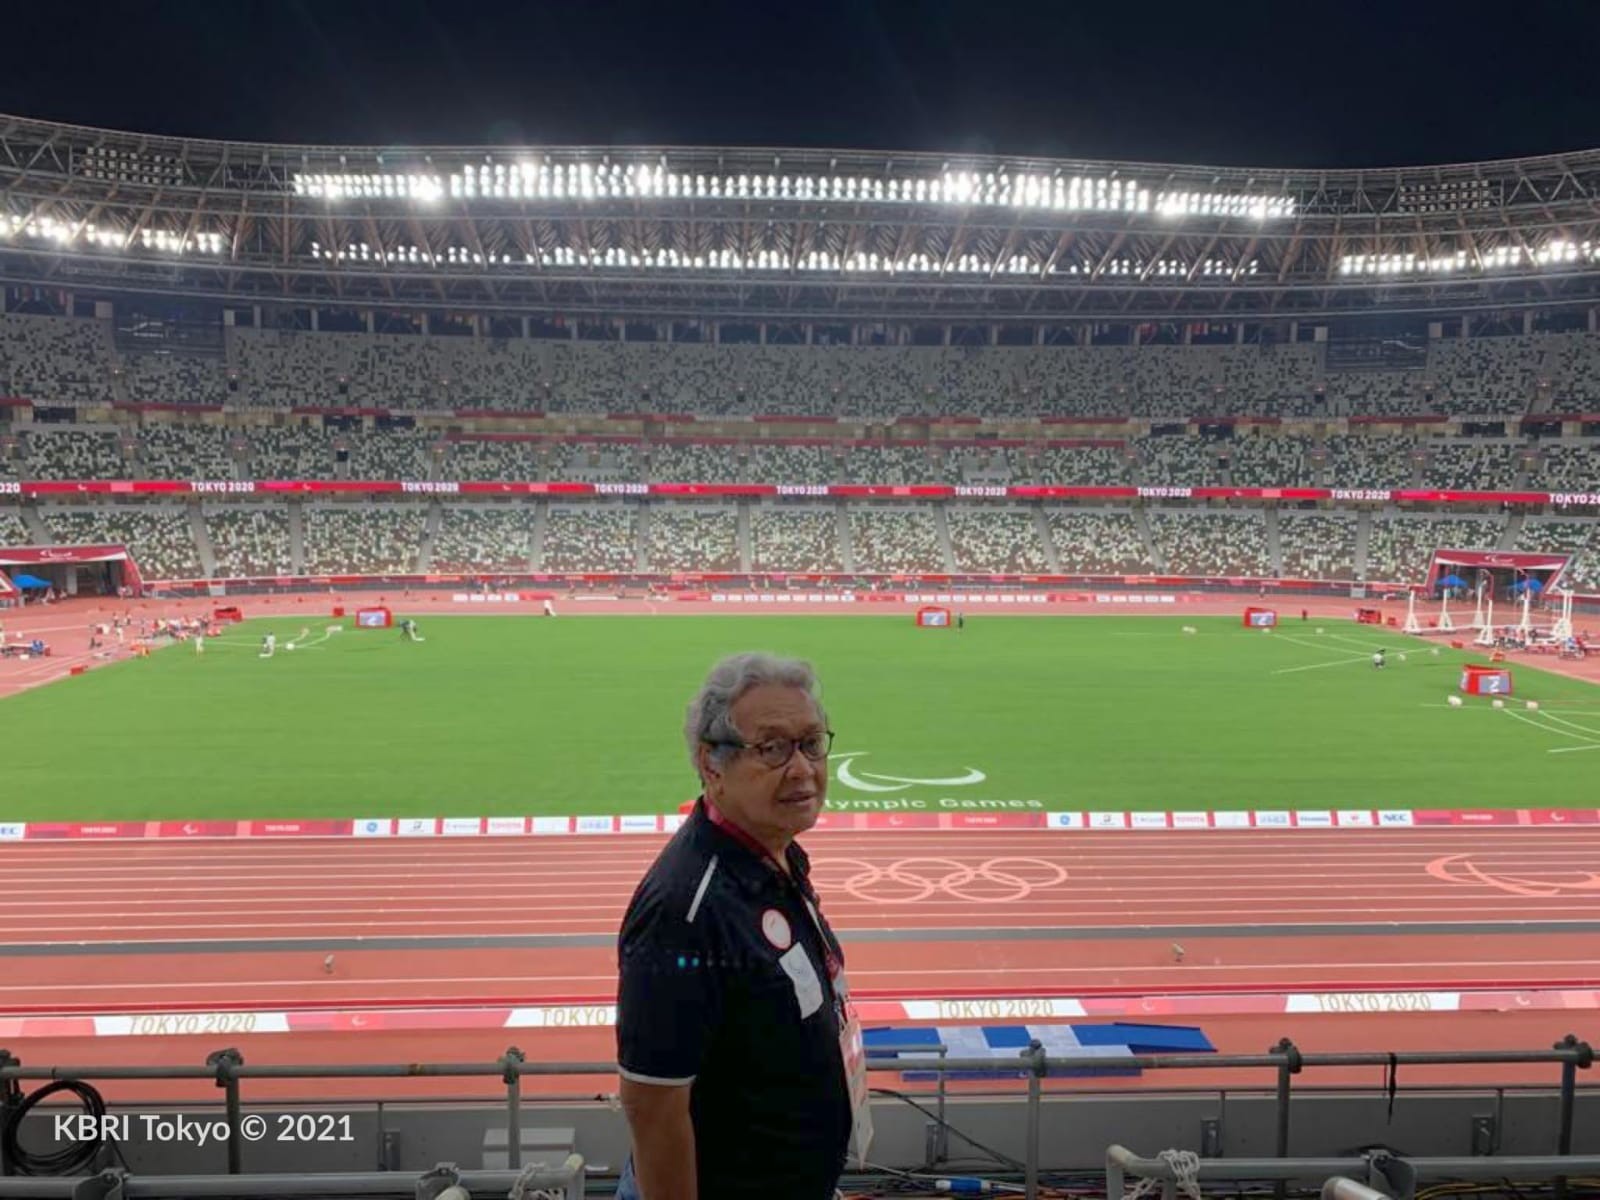 Dubes RI untuk Jepang Heri Akhmadi menyaksikan langsung perjuangan Saptoyogo Purnomo di Olympic Stadium, Tokyo Jumat 27 Agustus 2021. (Foto: KBRI Tokyo)